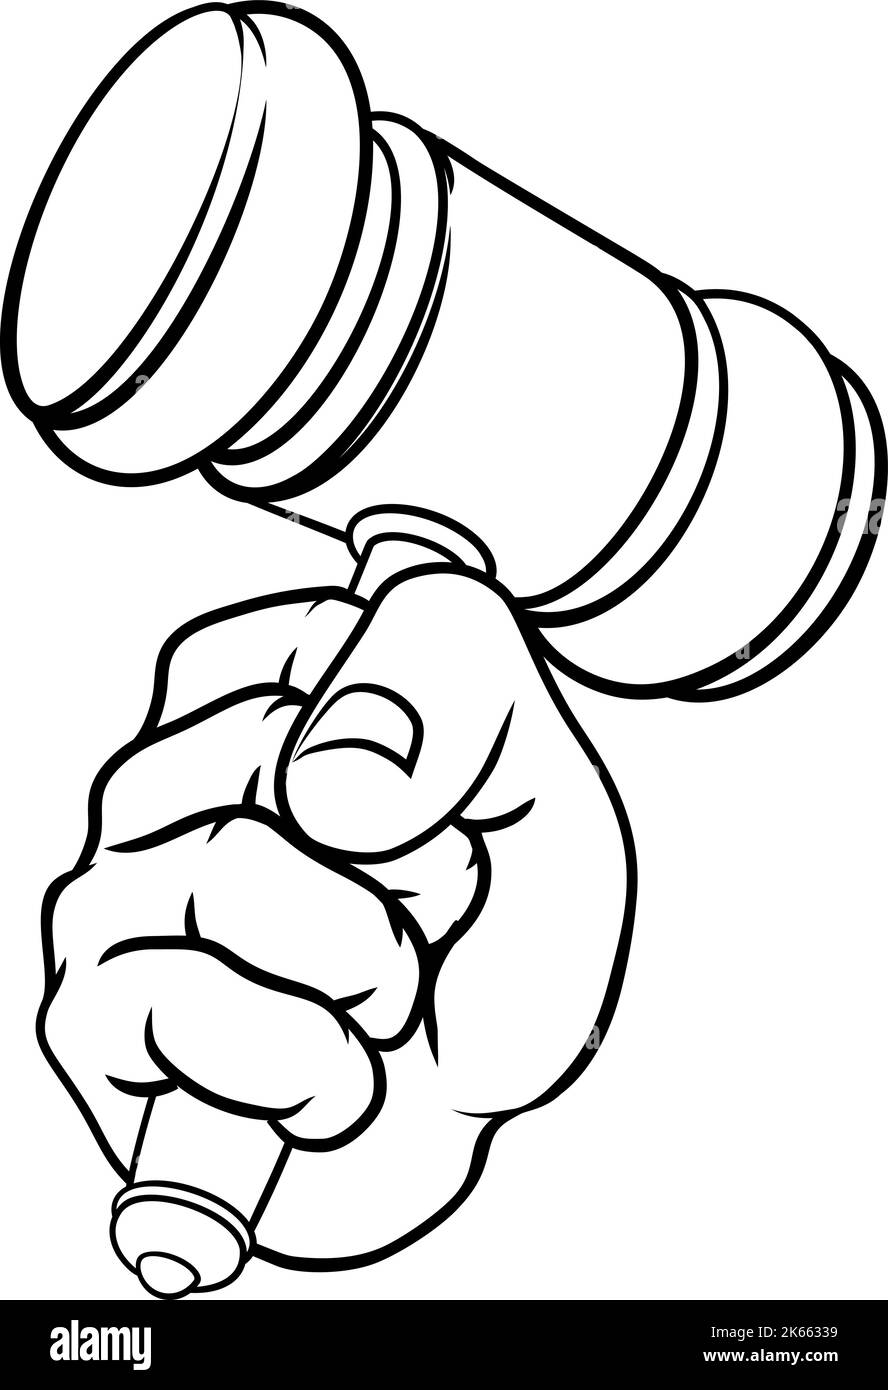 Pugno mano azienda giudice martello martello Cartoon Illustrazione Vettoriale